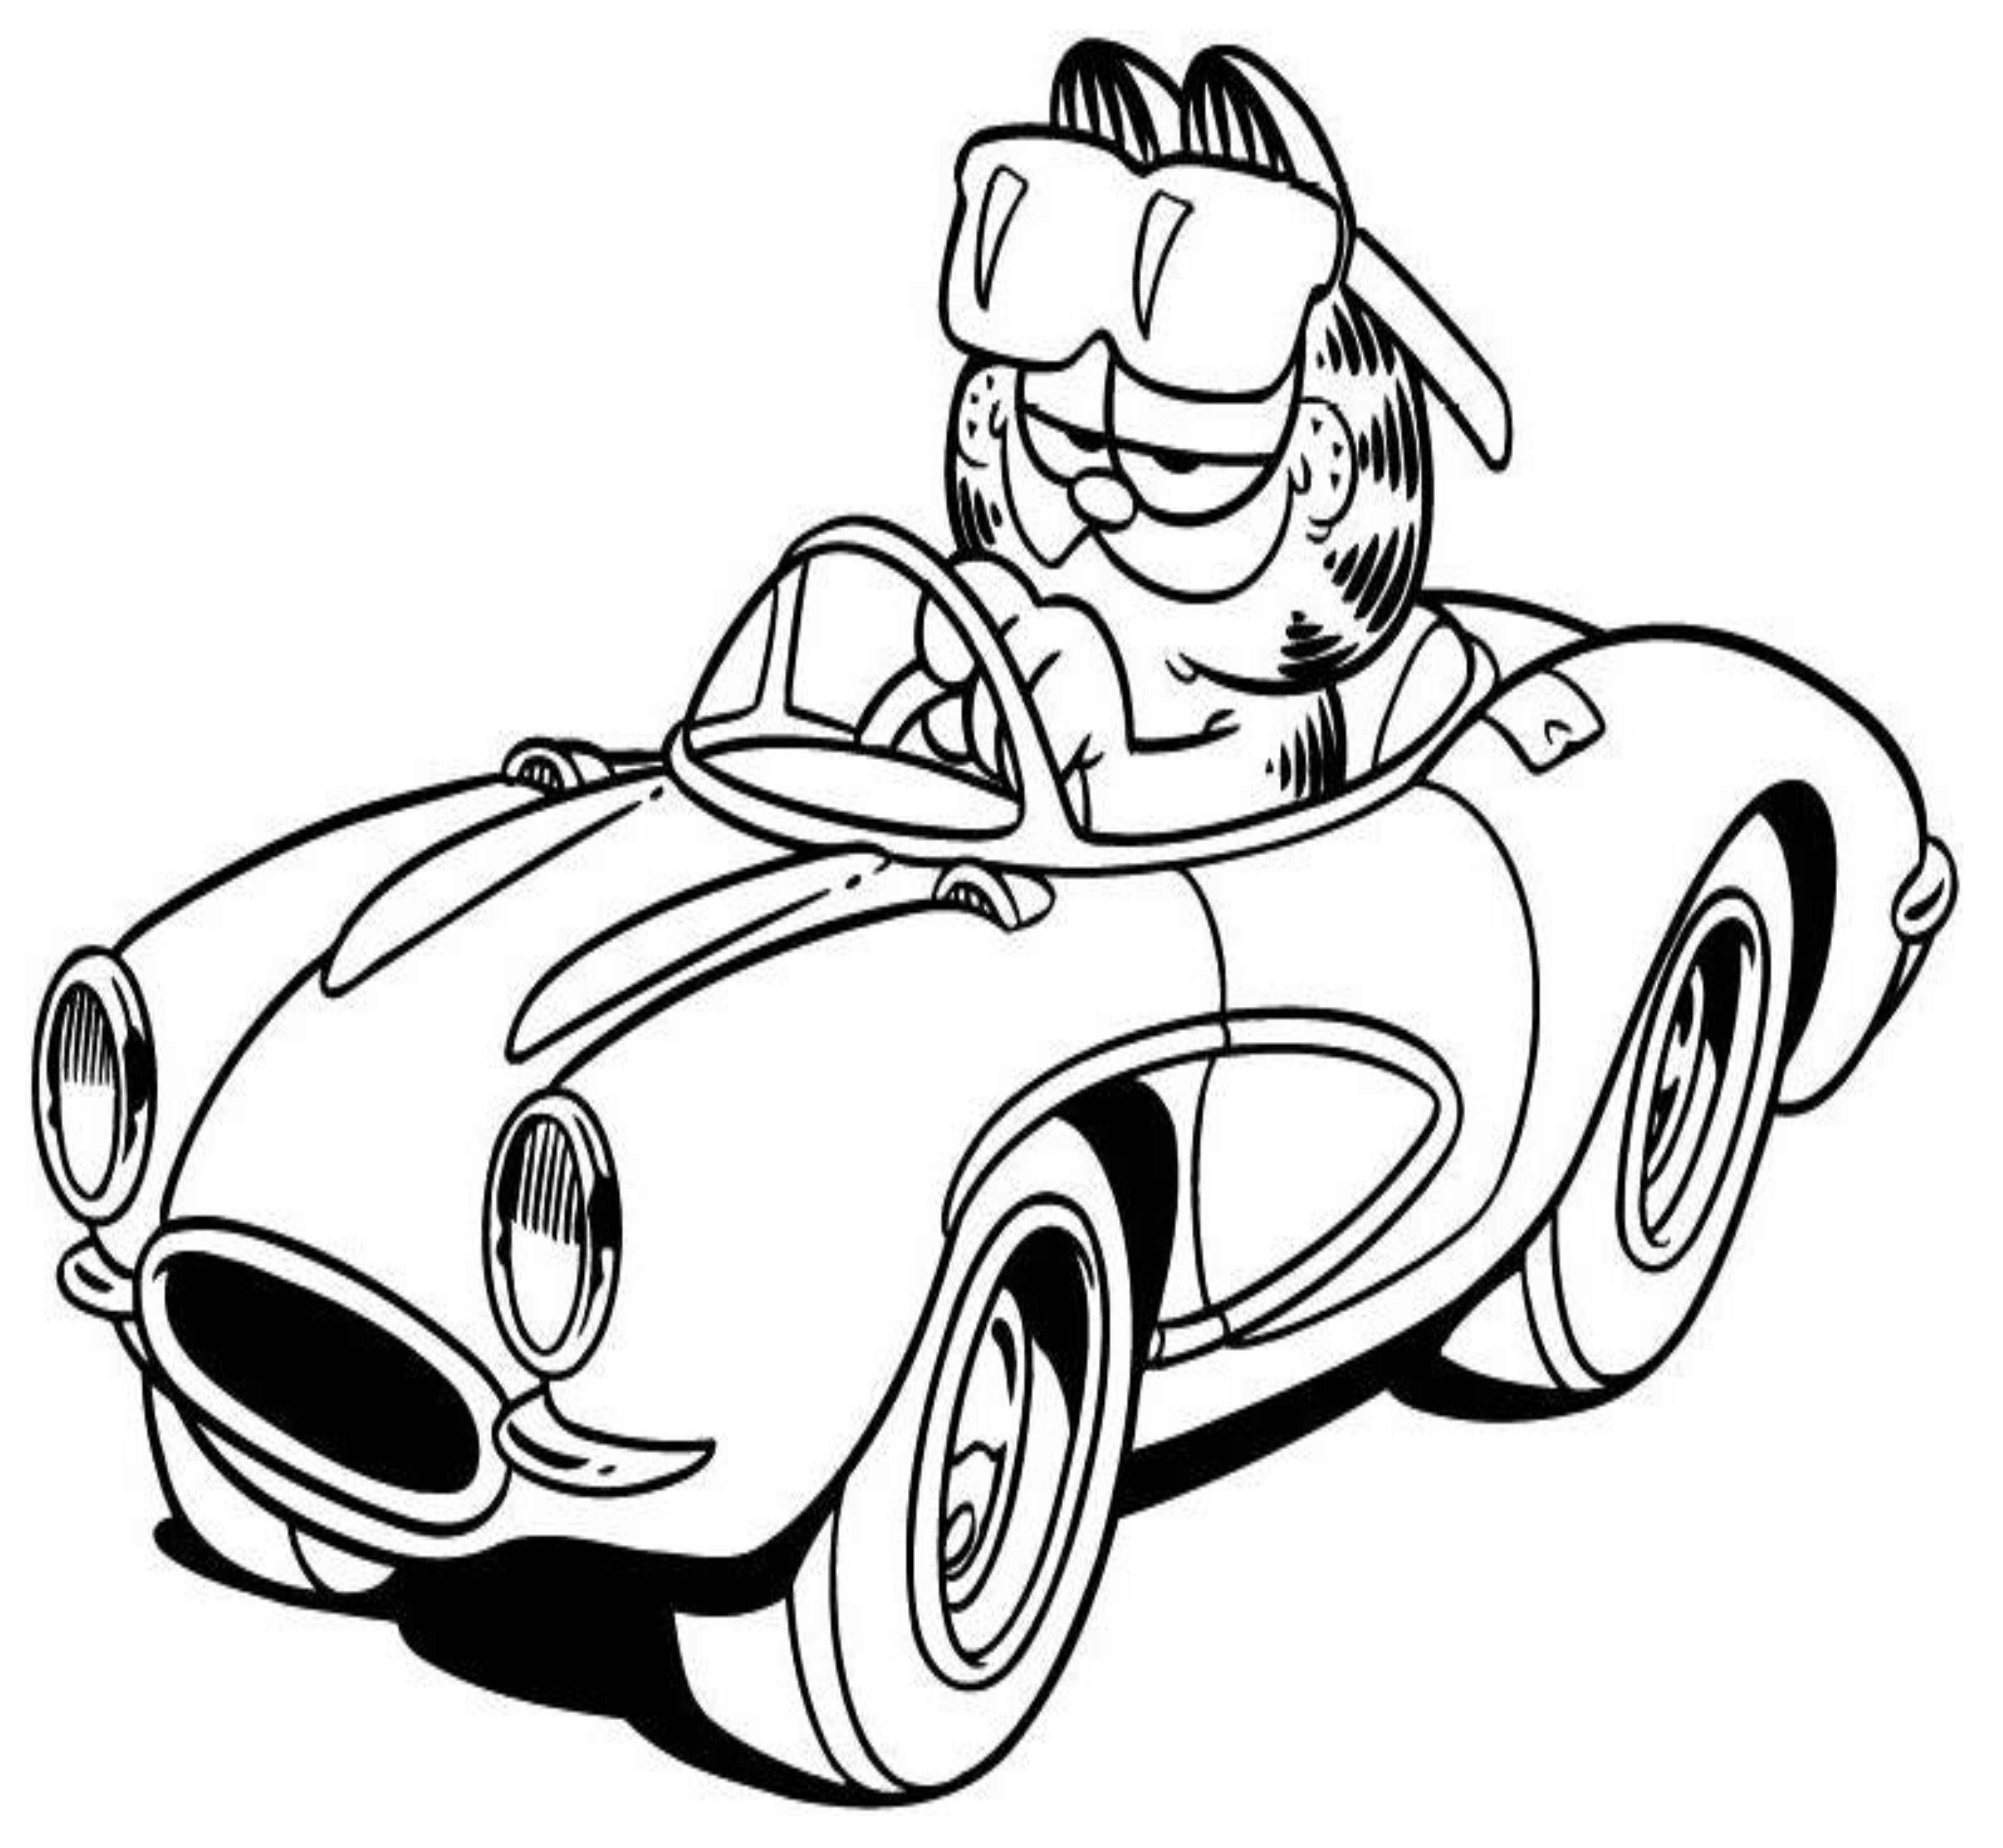 Jaguar Car Coloring Pages at GetColorings.com | Free printable